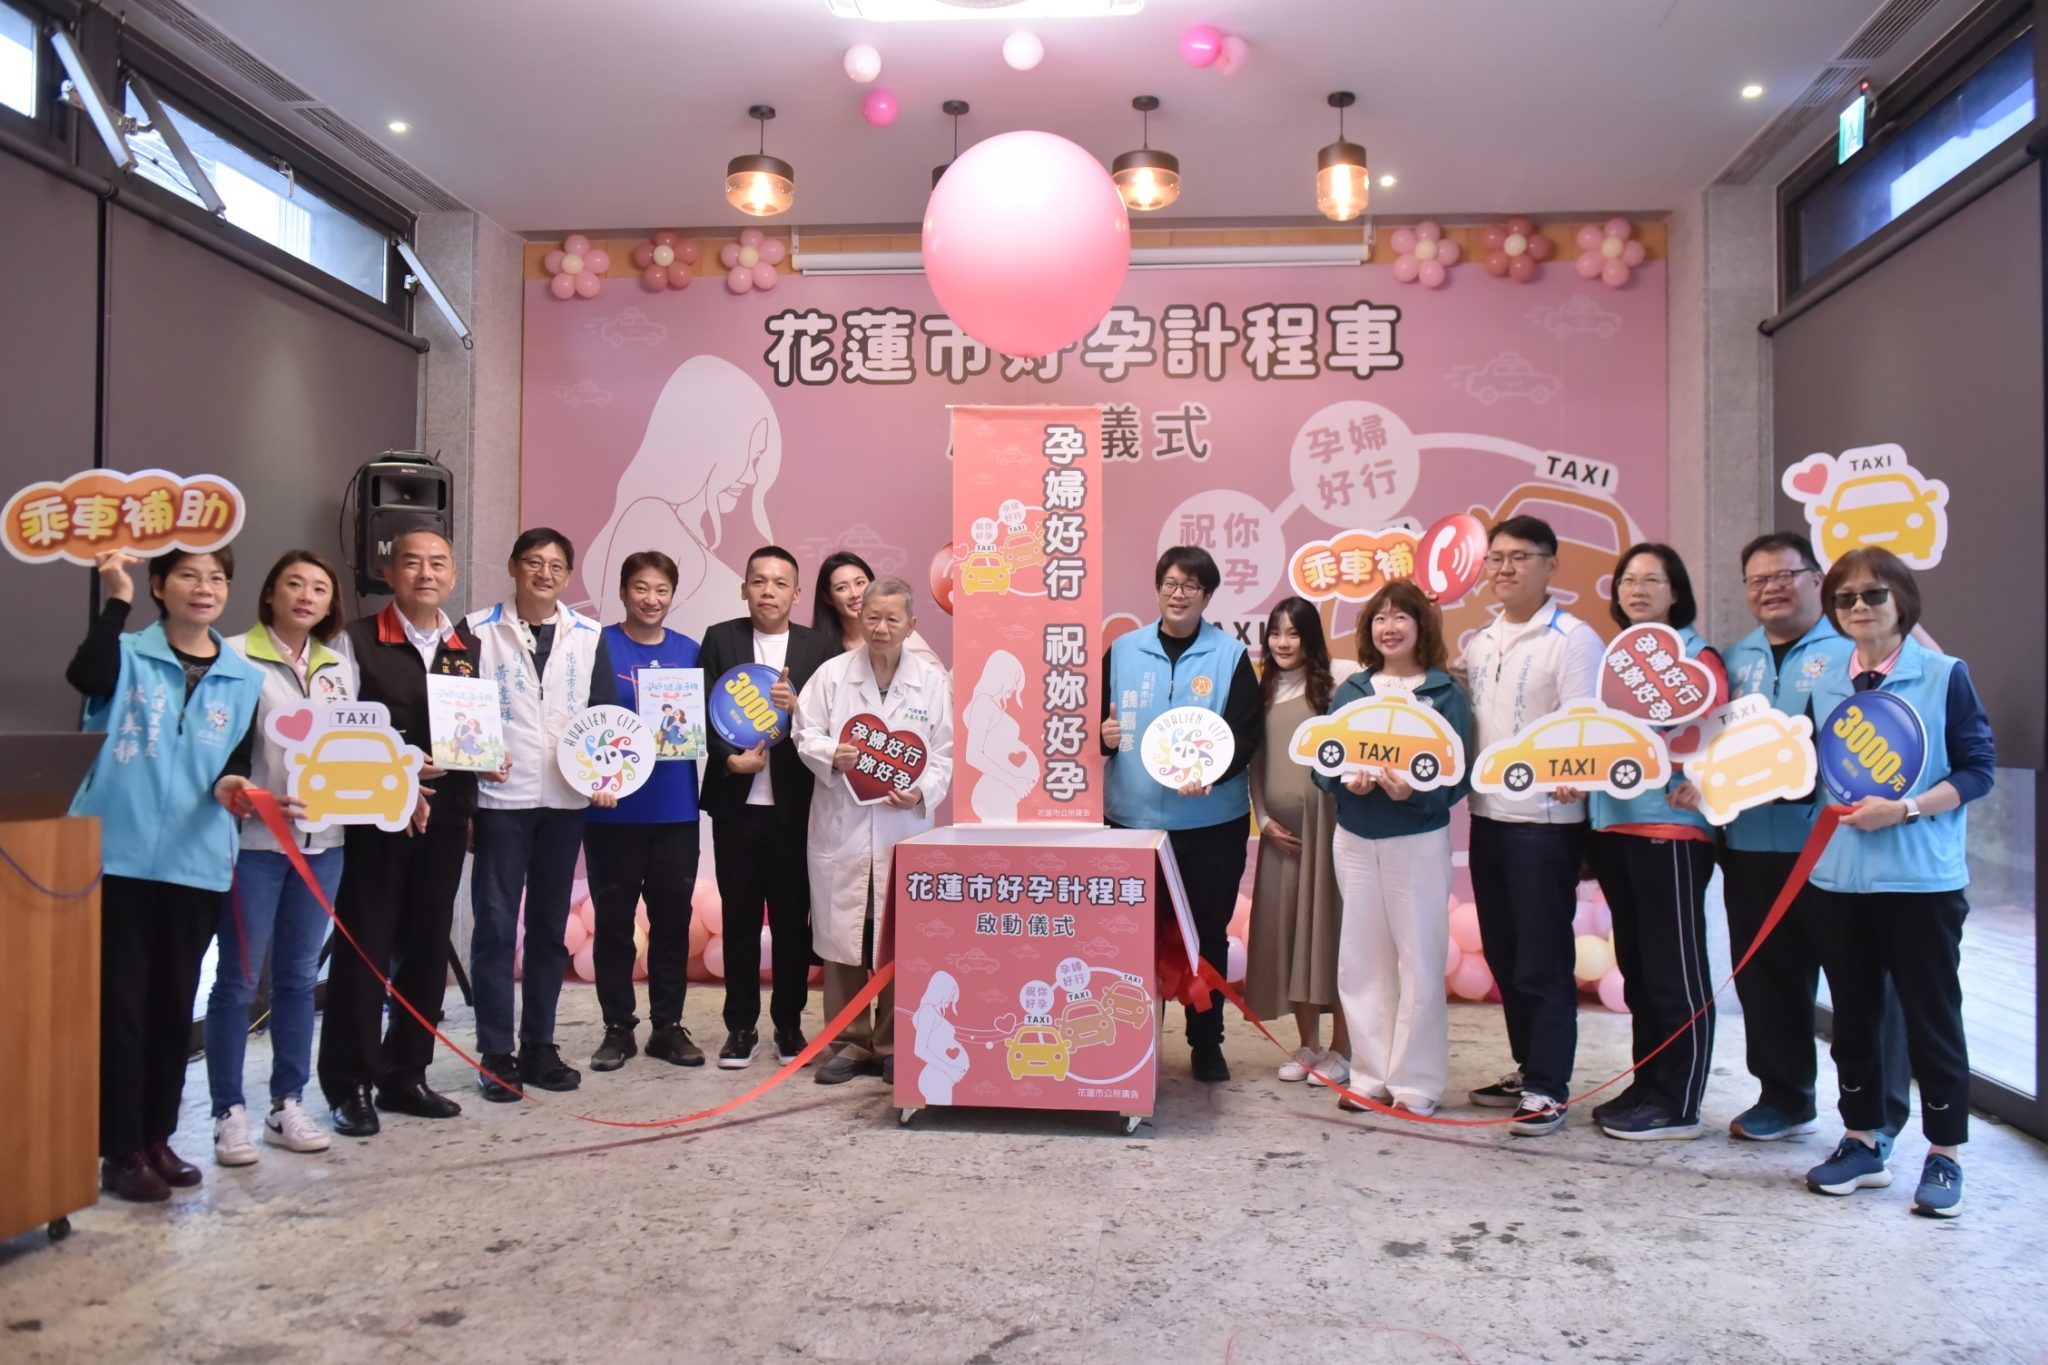 減輕孕婦產檢交通負擔 花蓮市首創孕婦計程車補助 - 早安台灣新聞 | Morning Taiwan News